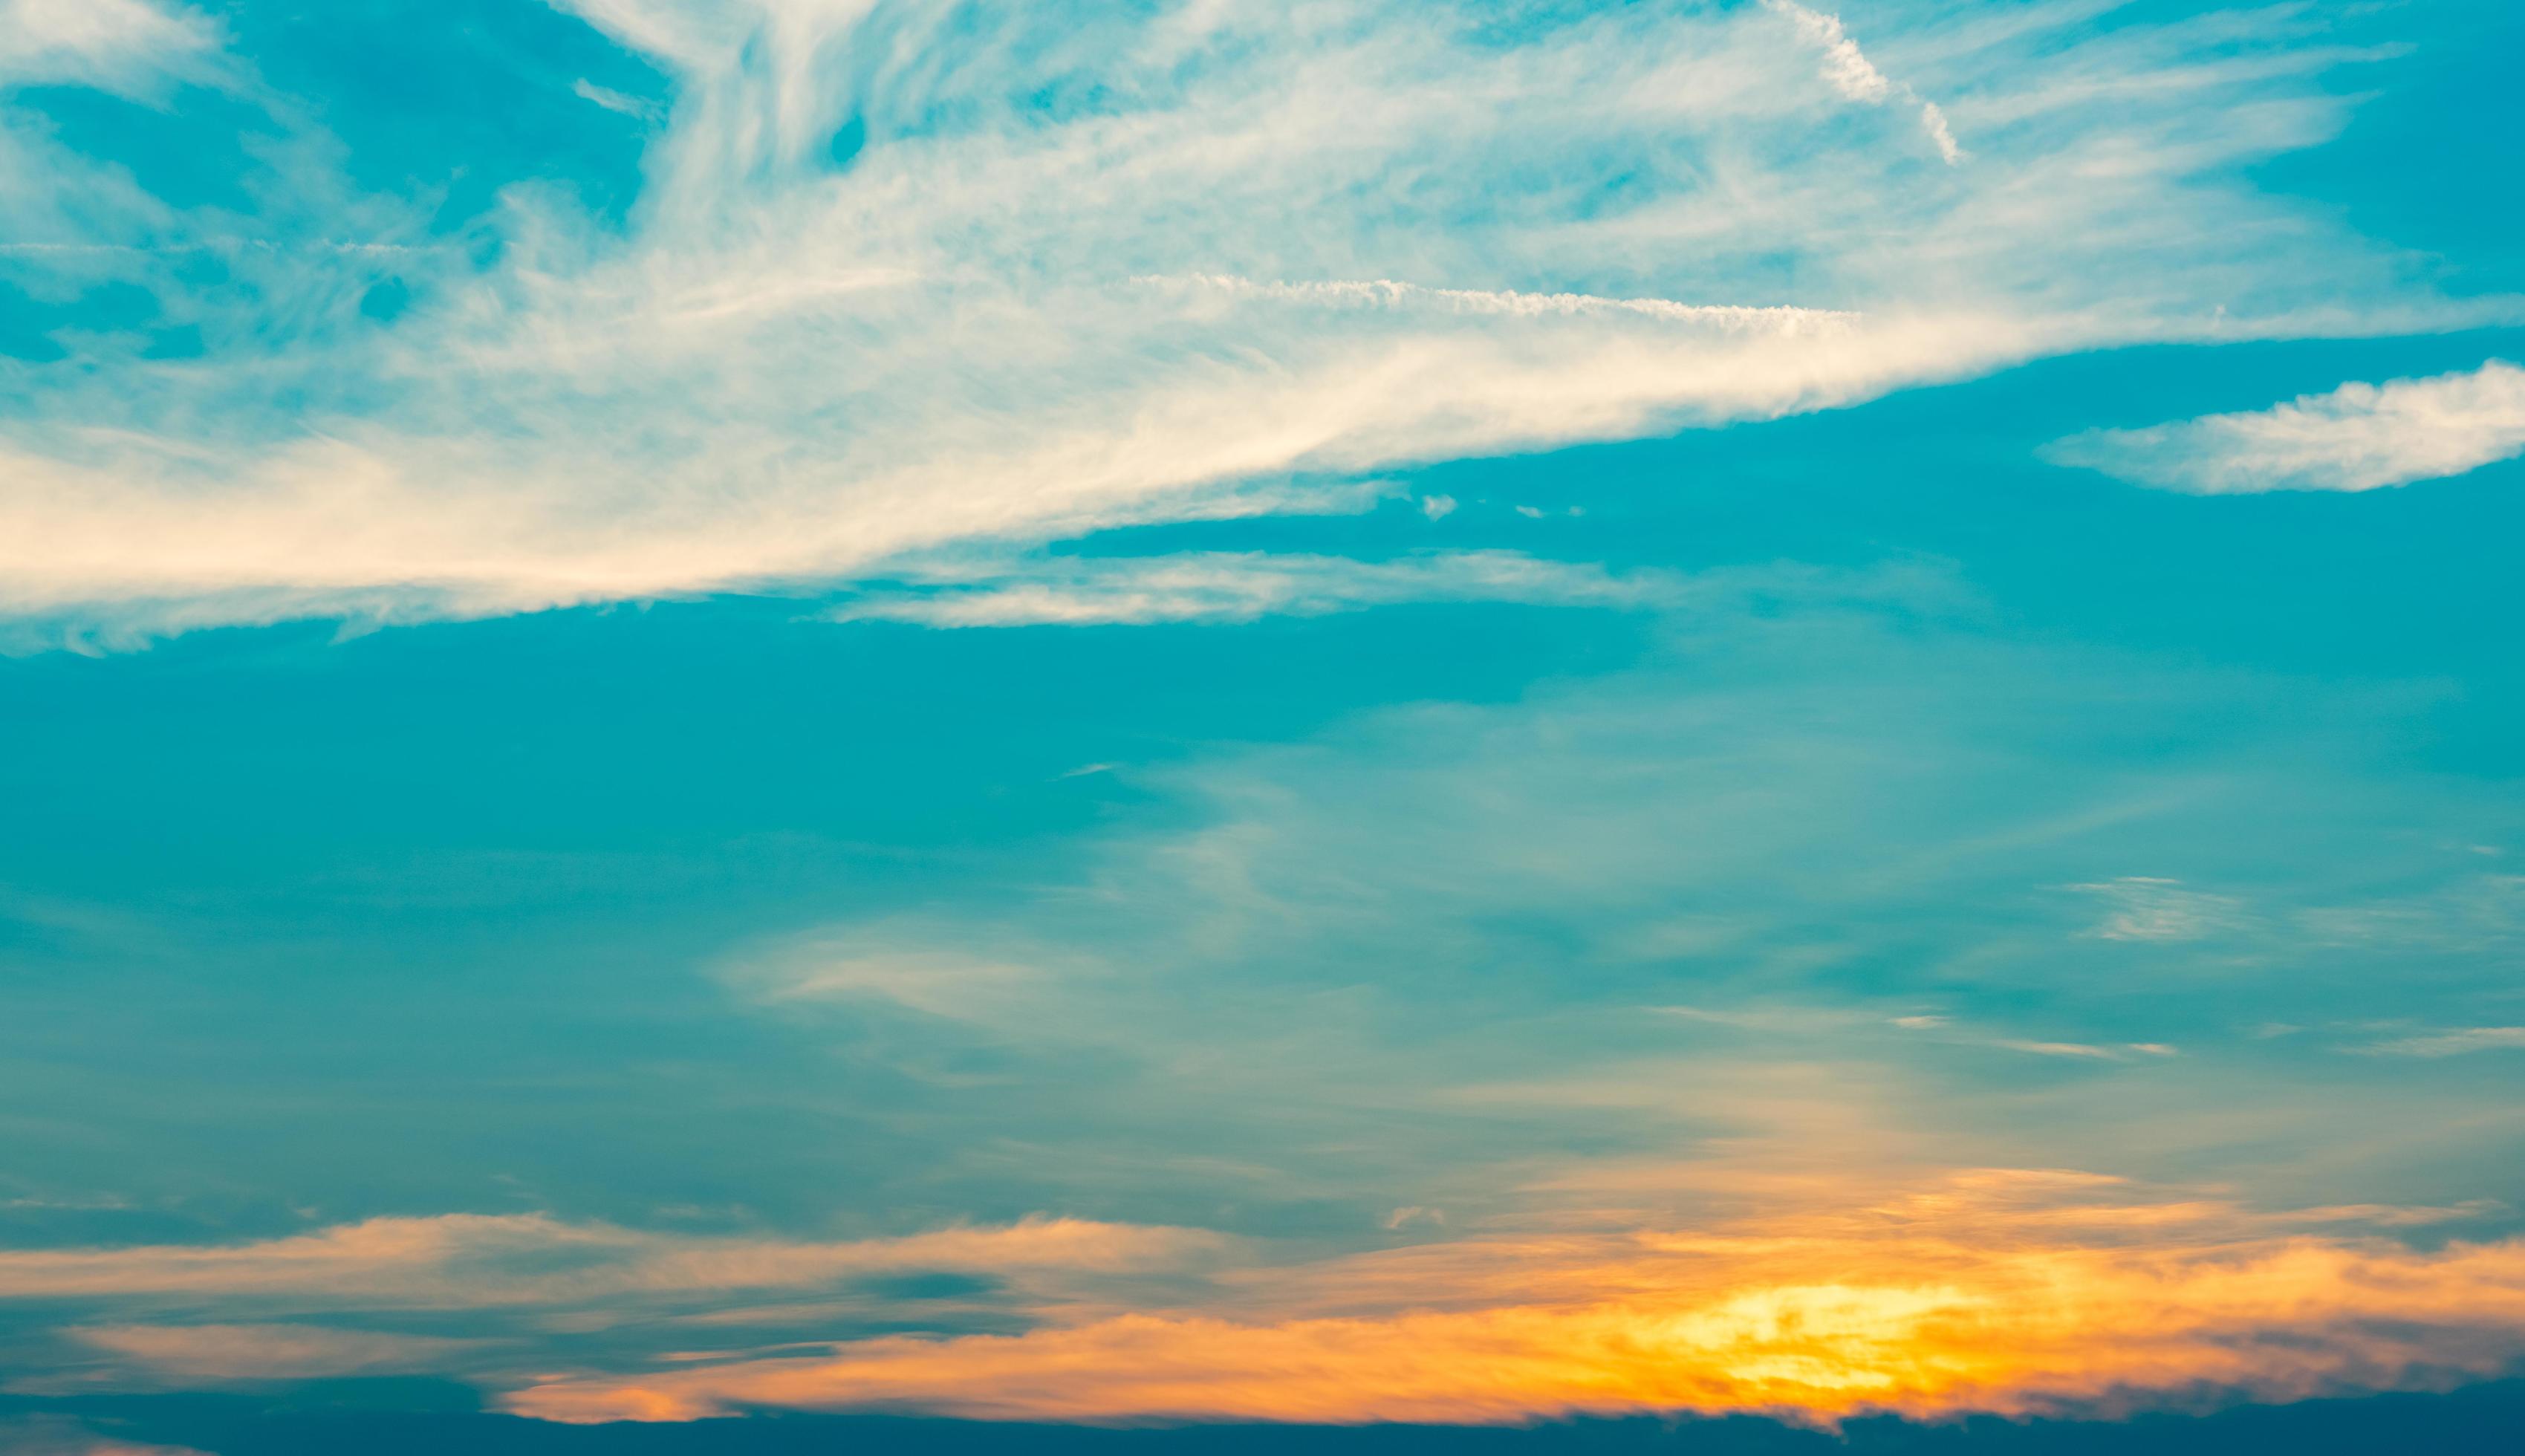 Bầu trời xanh ngút ngàn kết hợp với đám mây trắng muốt tạo ra một bức tranh đẹp như trong mơ. Hãy xem hình ảnh liên quan để chiêm ngưỡng vẻ đẹp đầy huyền bí của thiên nhiên.